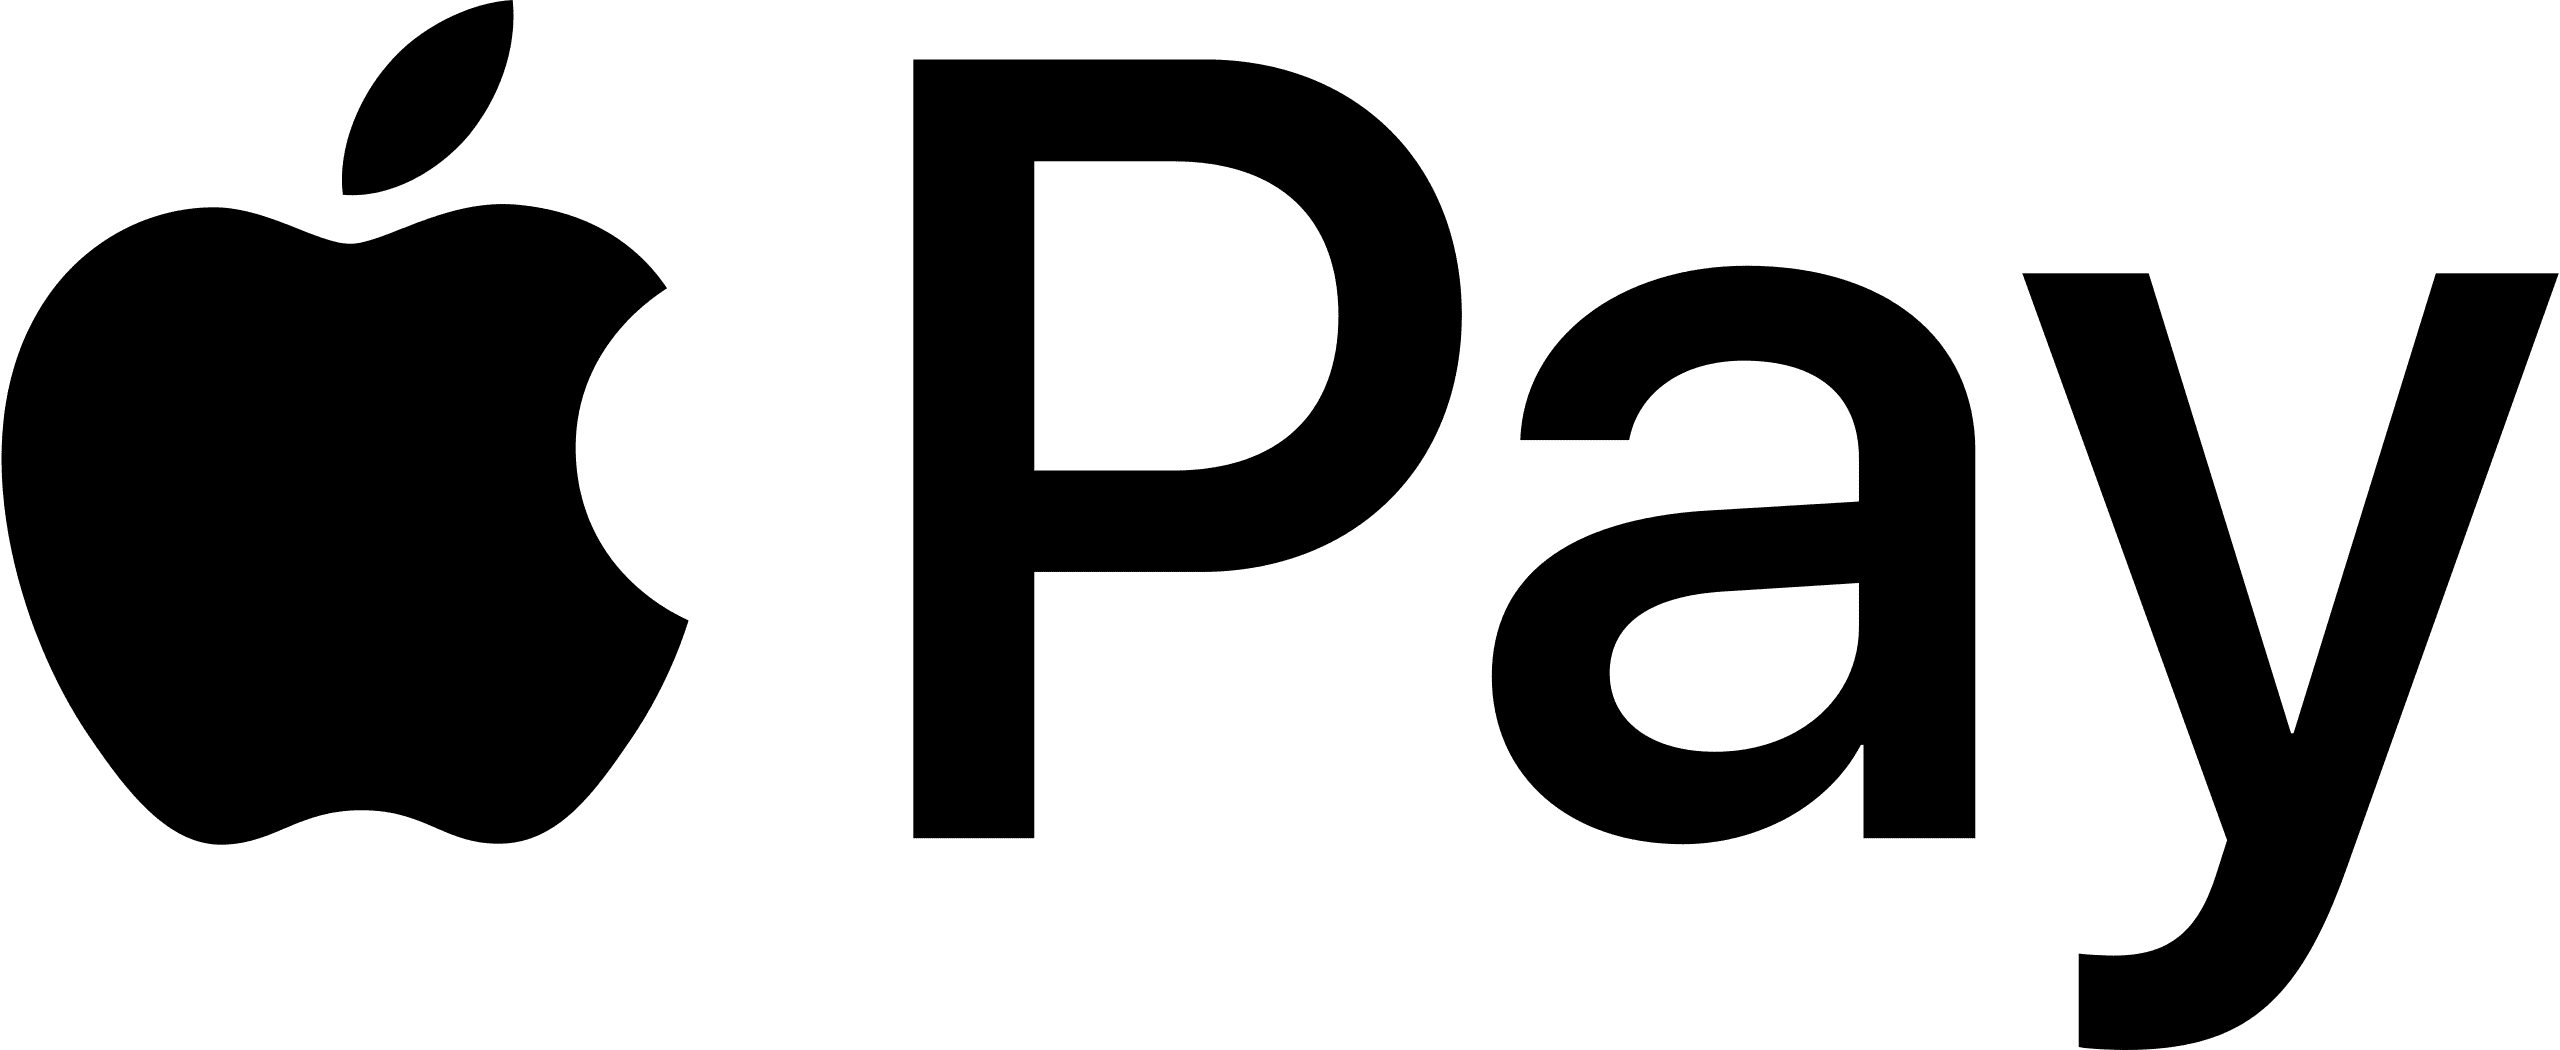 2560px-Apple_Pay_logo.svg